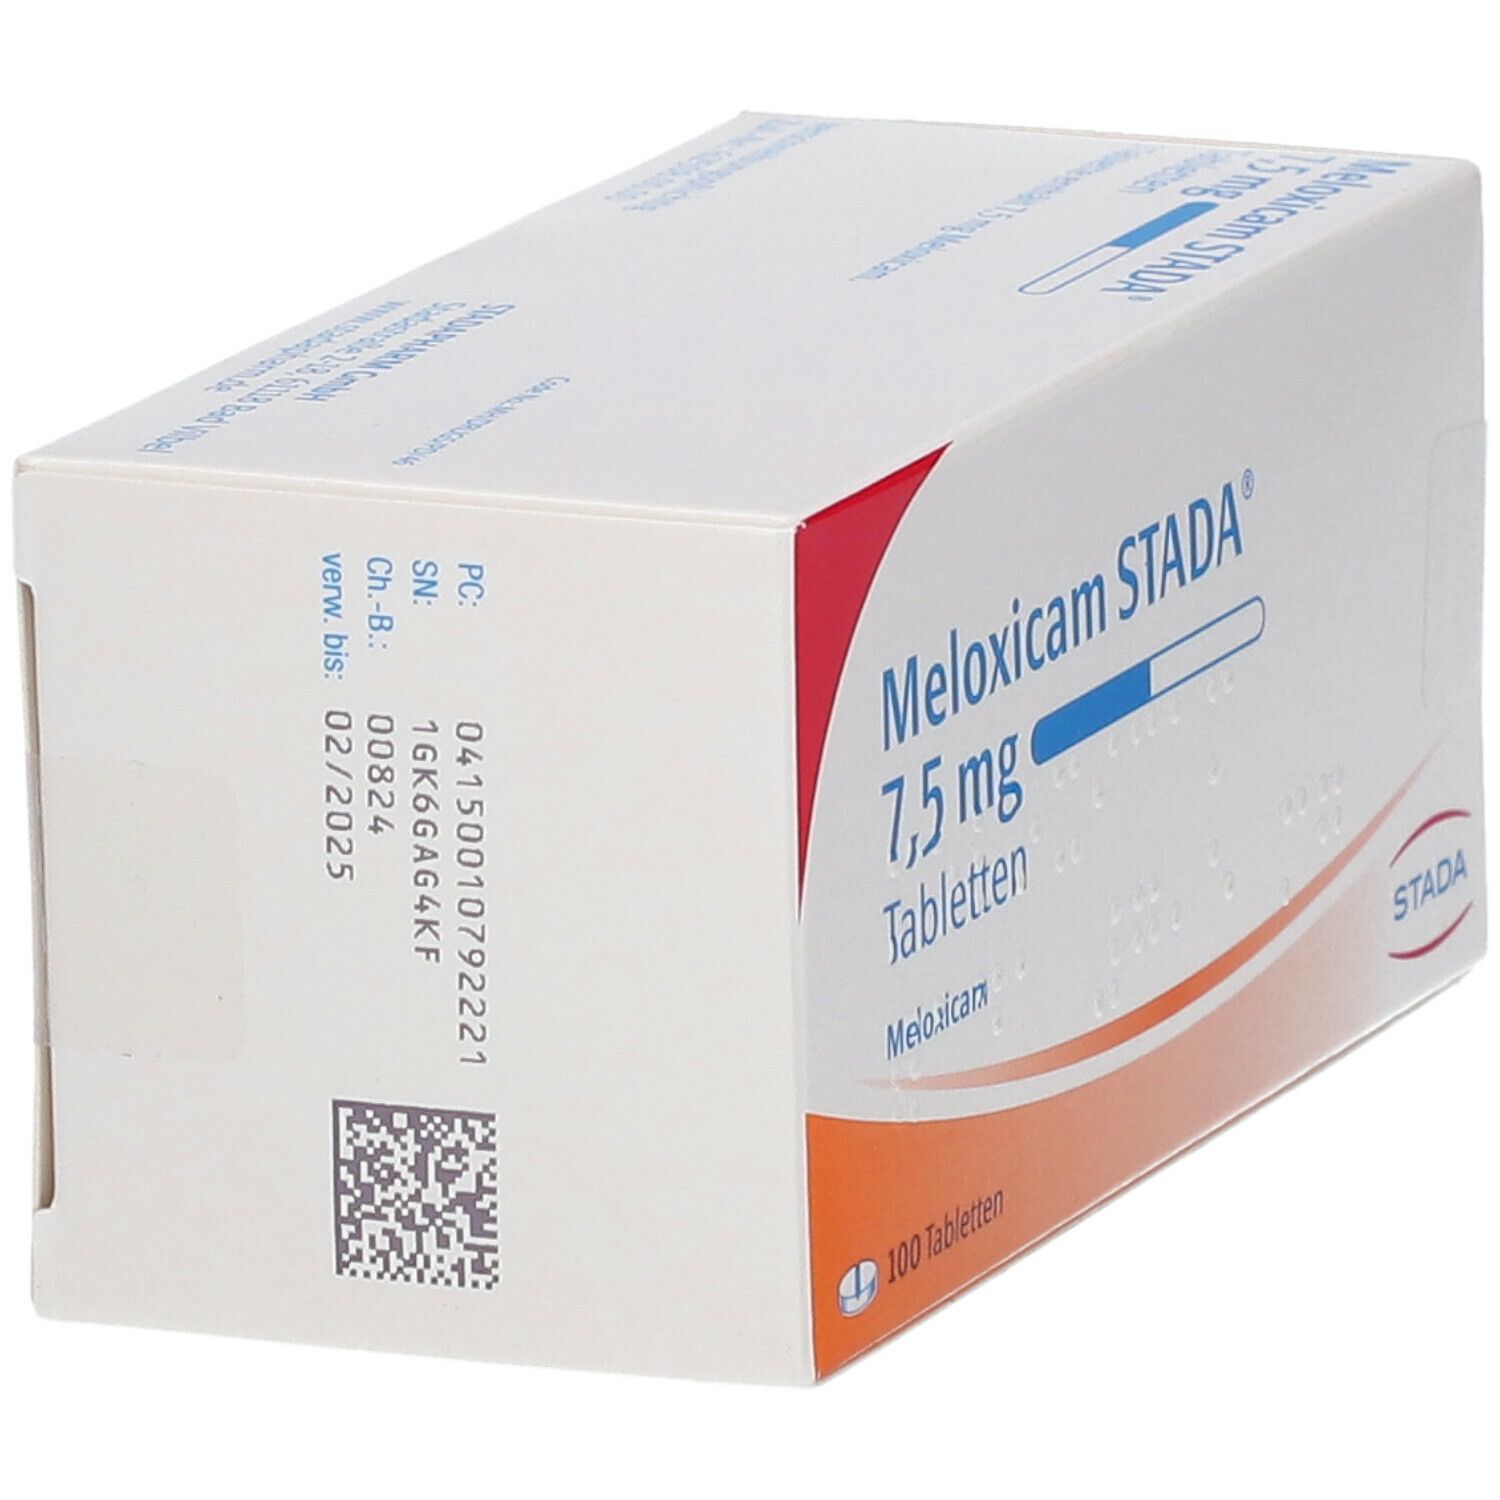 Meloxicam STADA® 7,5 mg